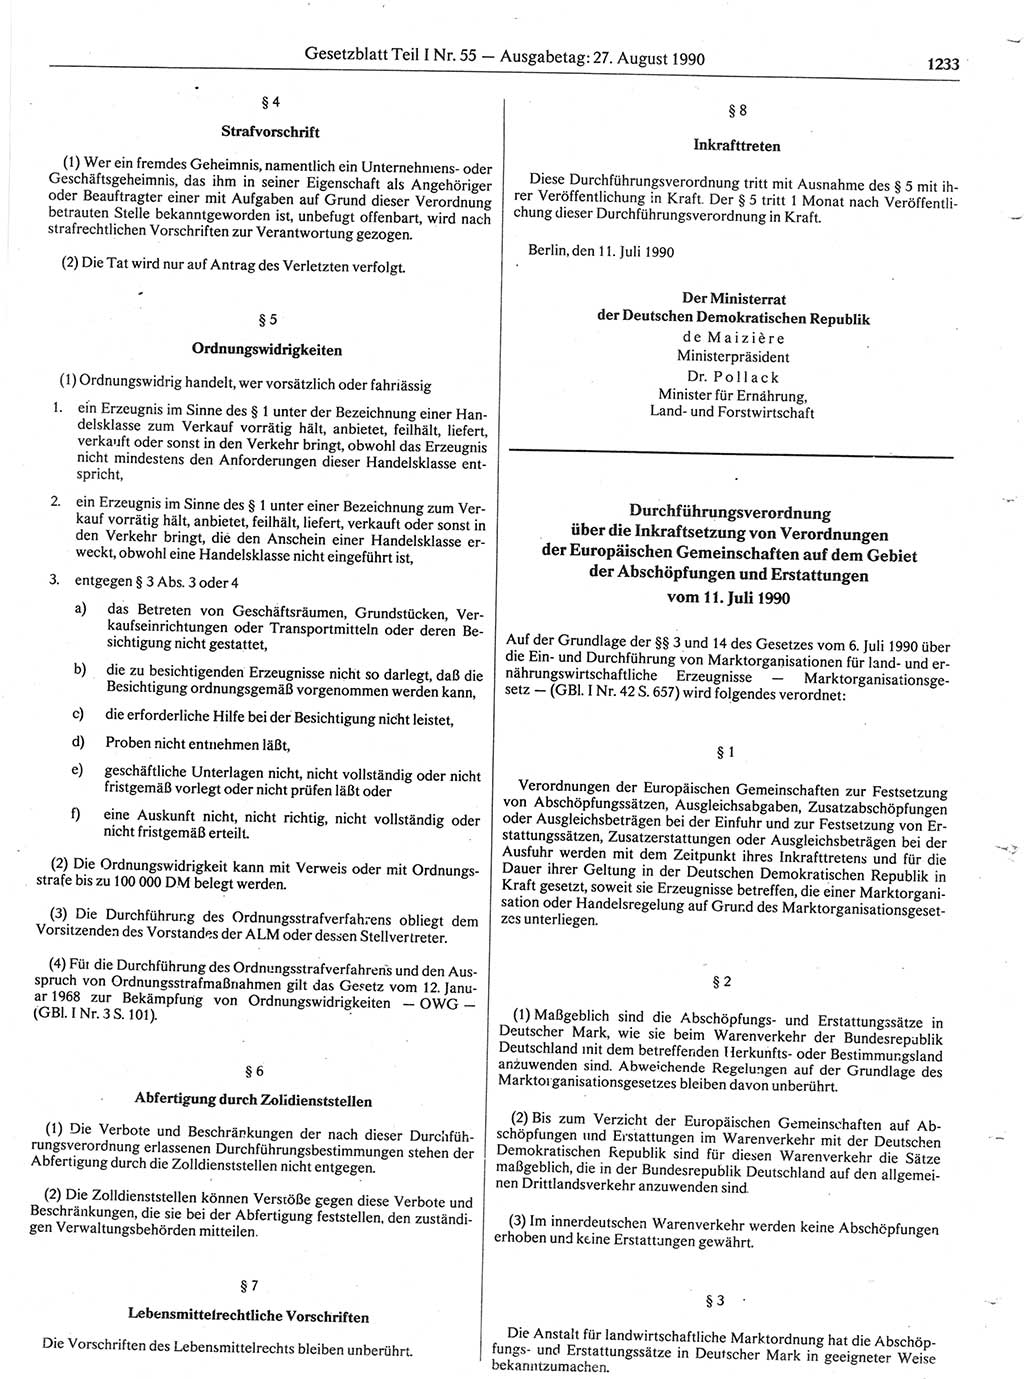 Gesetzblatt (GBl.) der Deutschen Demokratischen Republik (DDR) Teil Ⅰ 1990, Seite 1233 (GBl. DDR Ⅰ 1990, S. 1233)